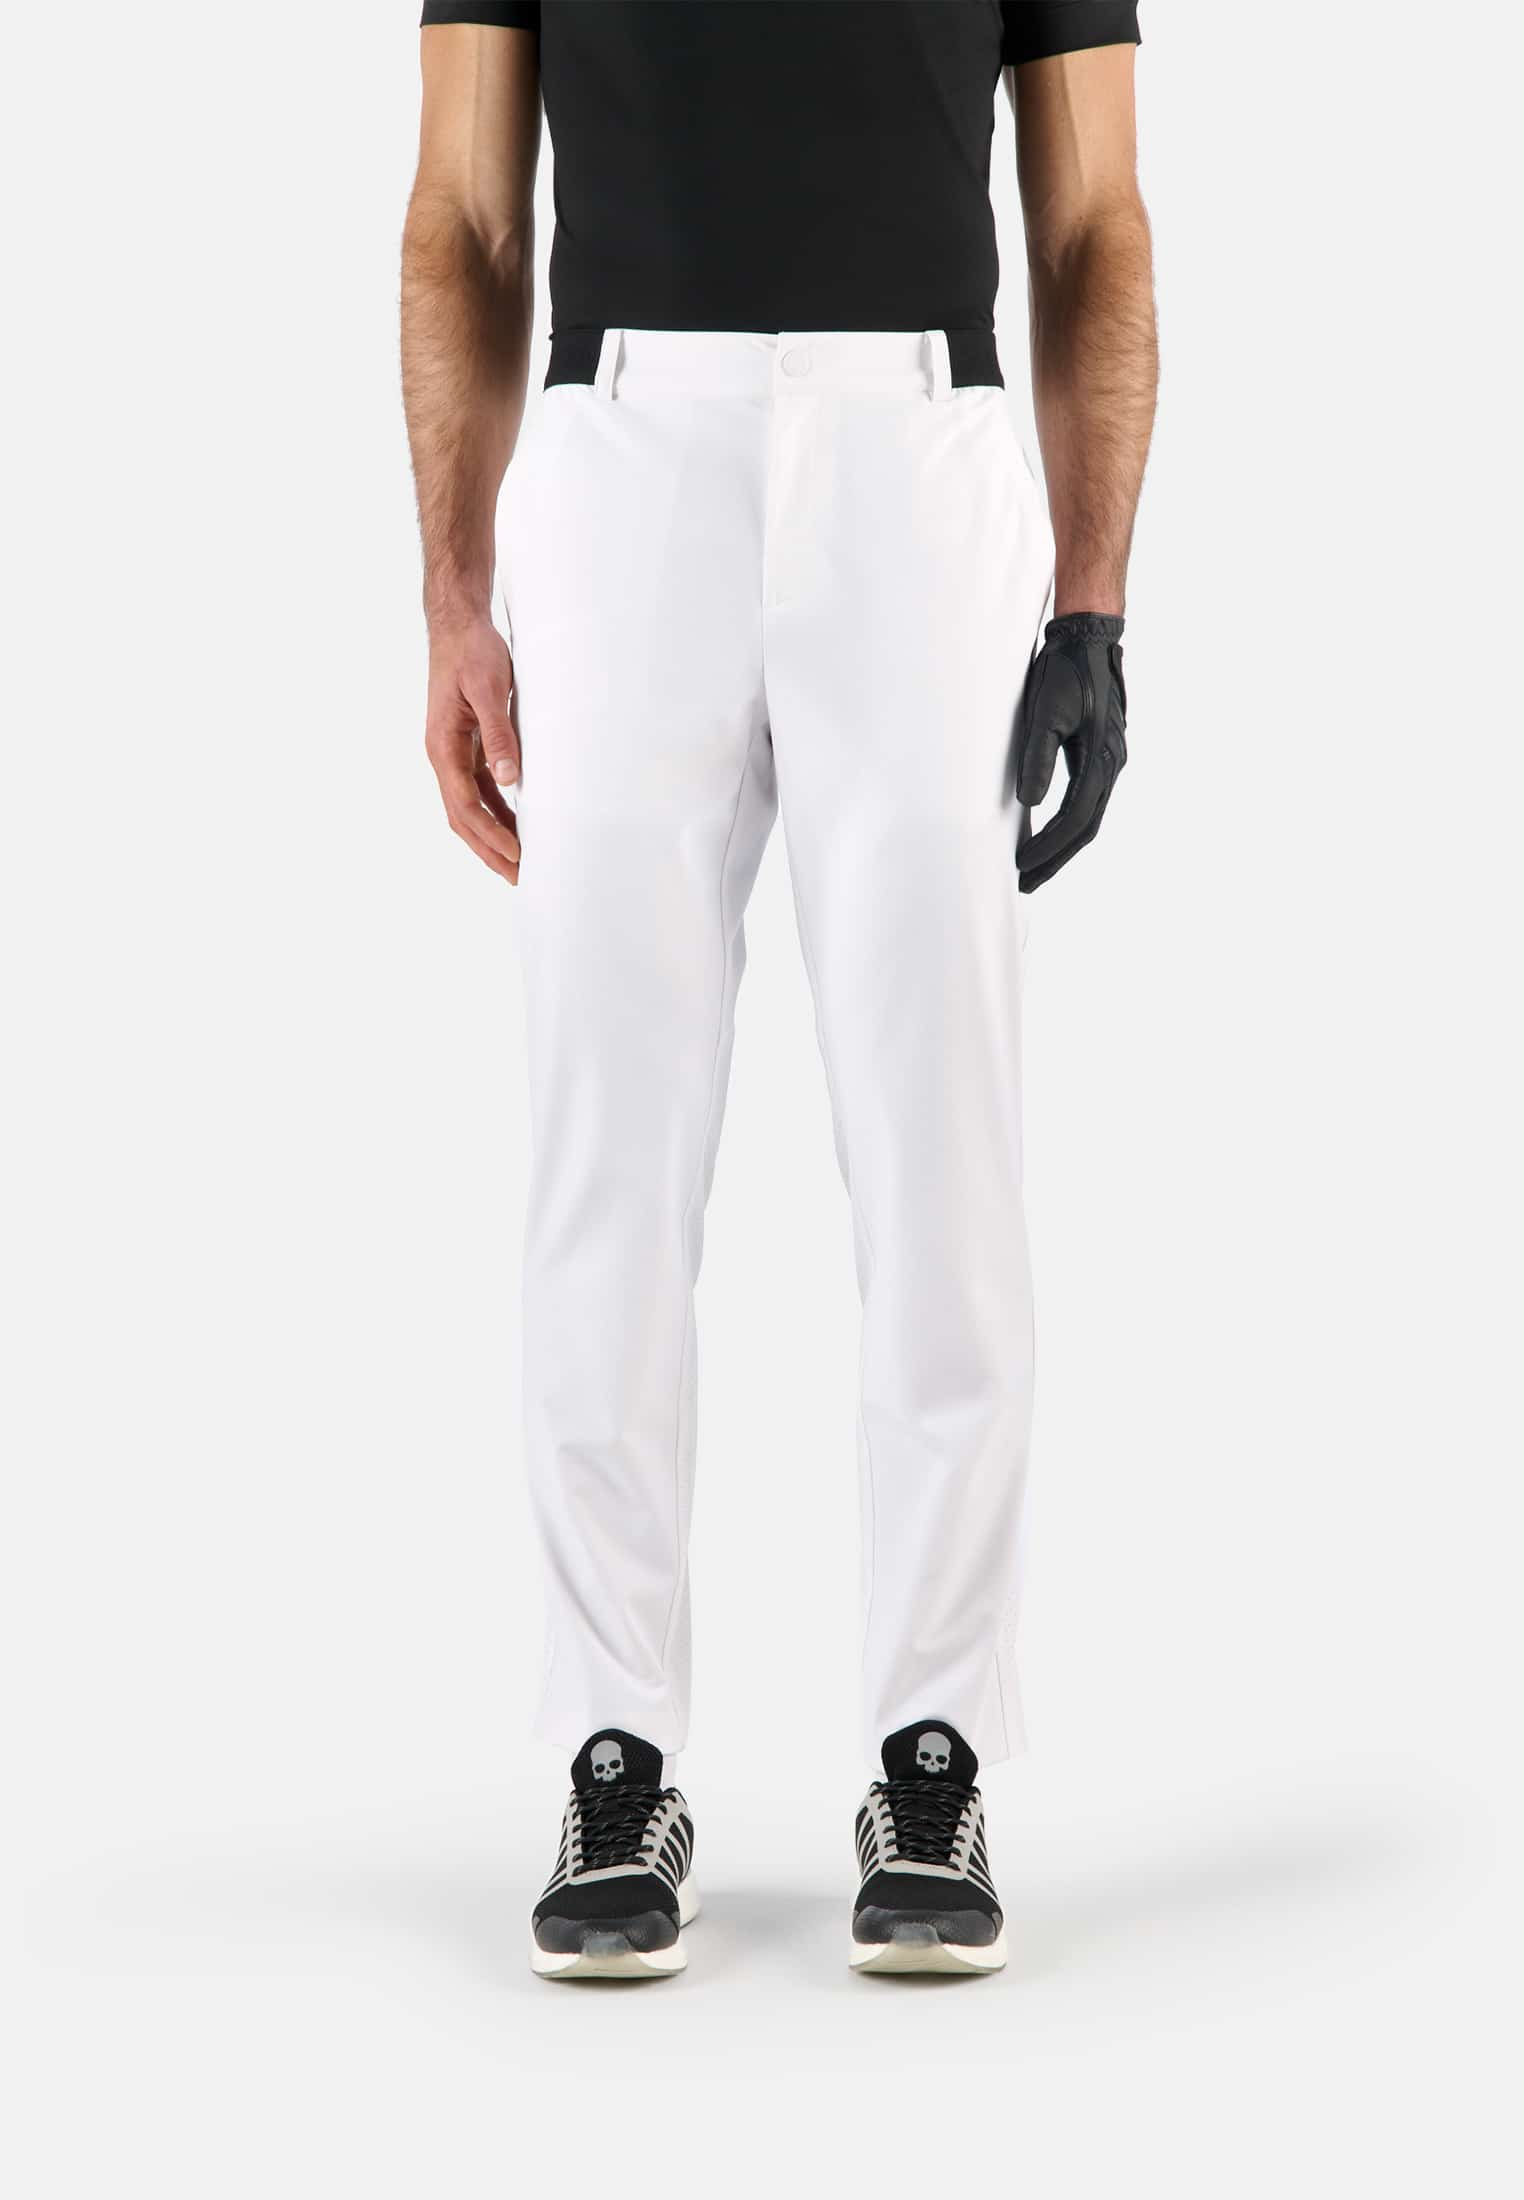 TECH PANTS - Apparel - Outlet Hydrogen - Luxury Sportwear